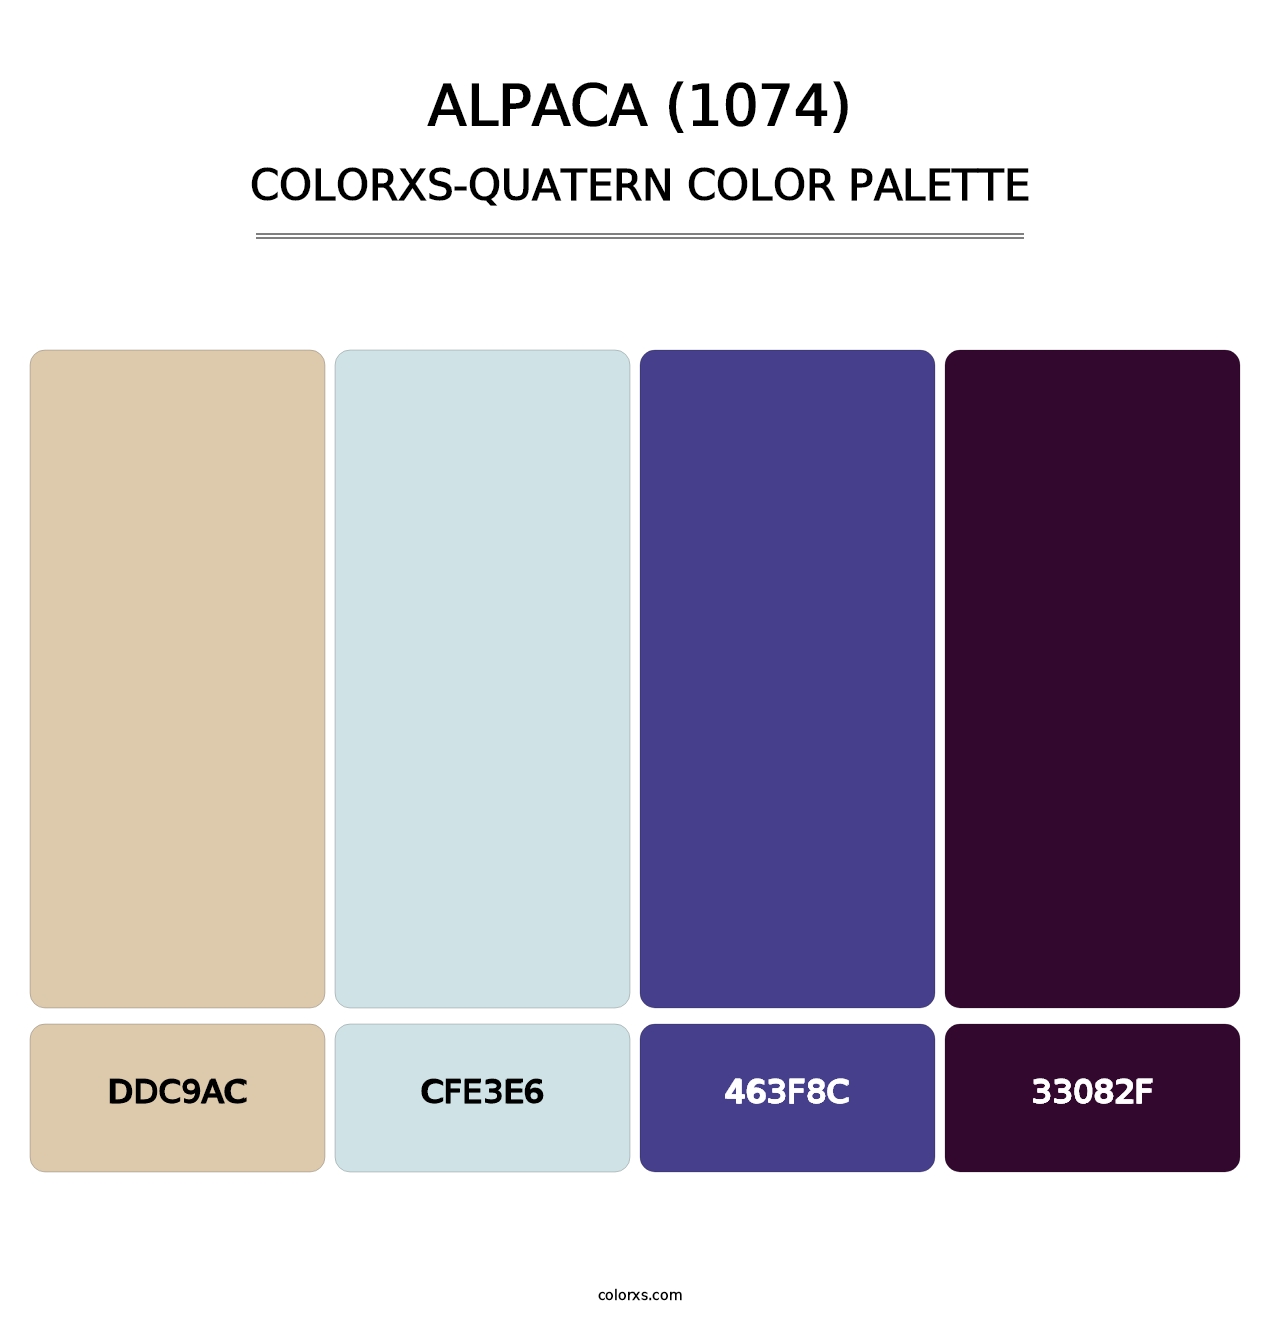 Alpaca (1074) - Colorxs Quatern Palette